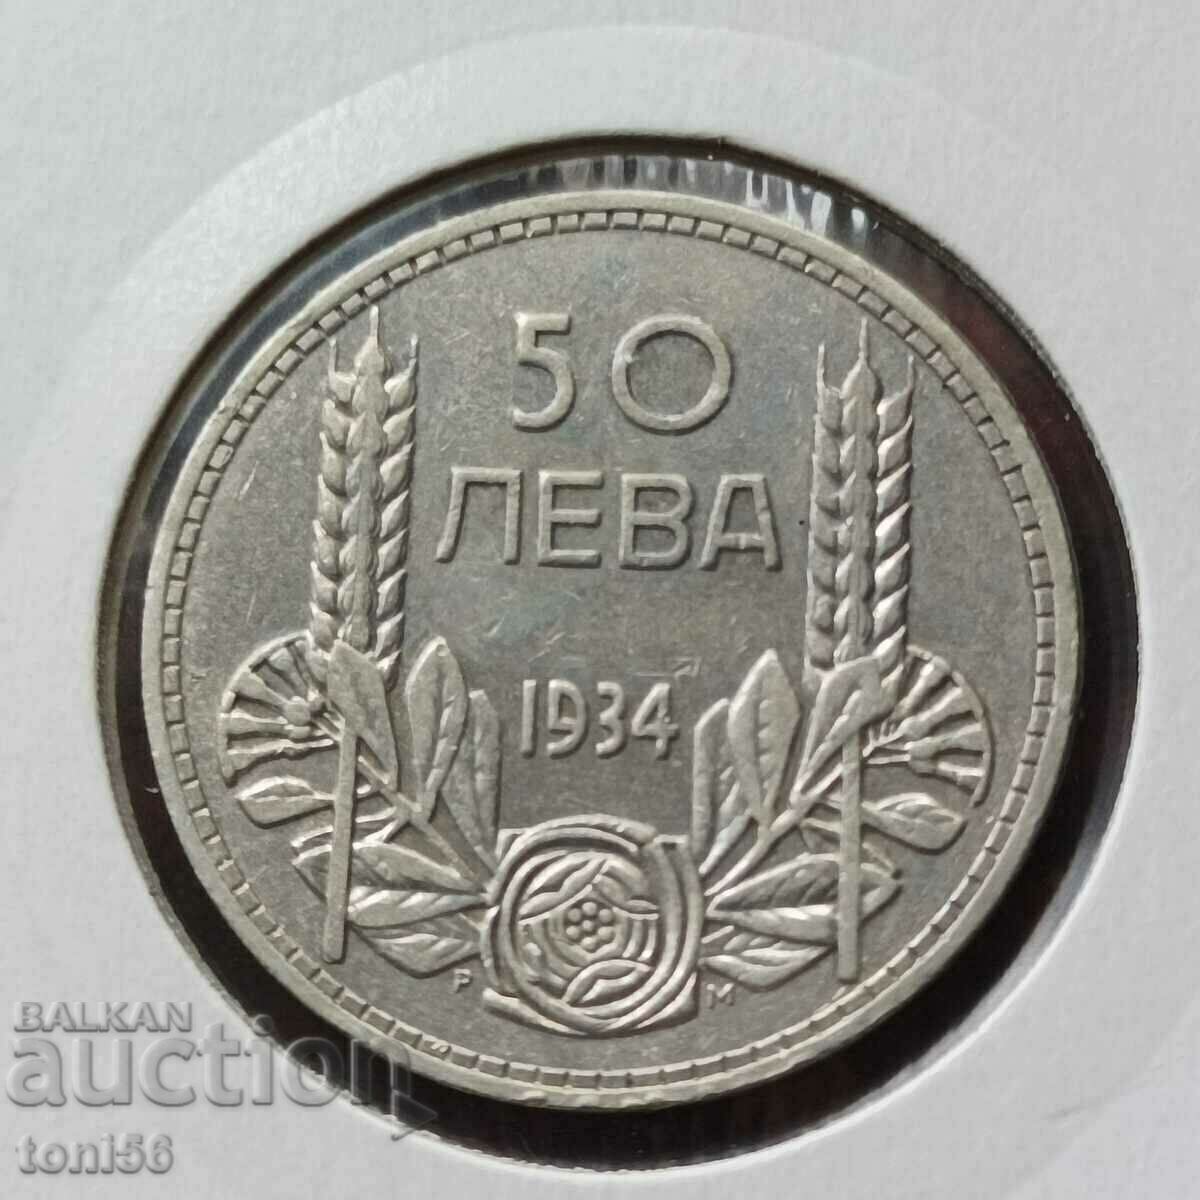 Bulgaria 50 leva 1934 argint